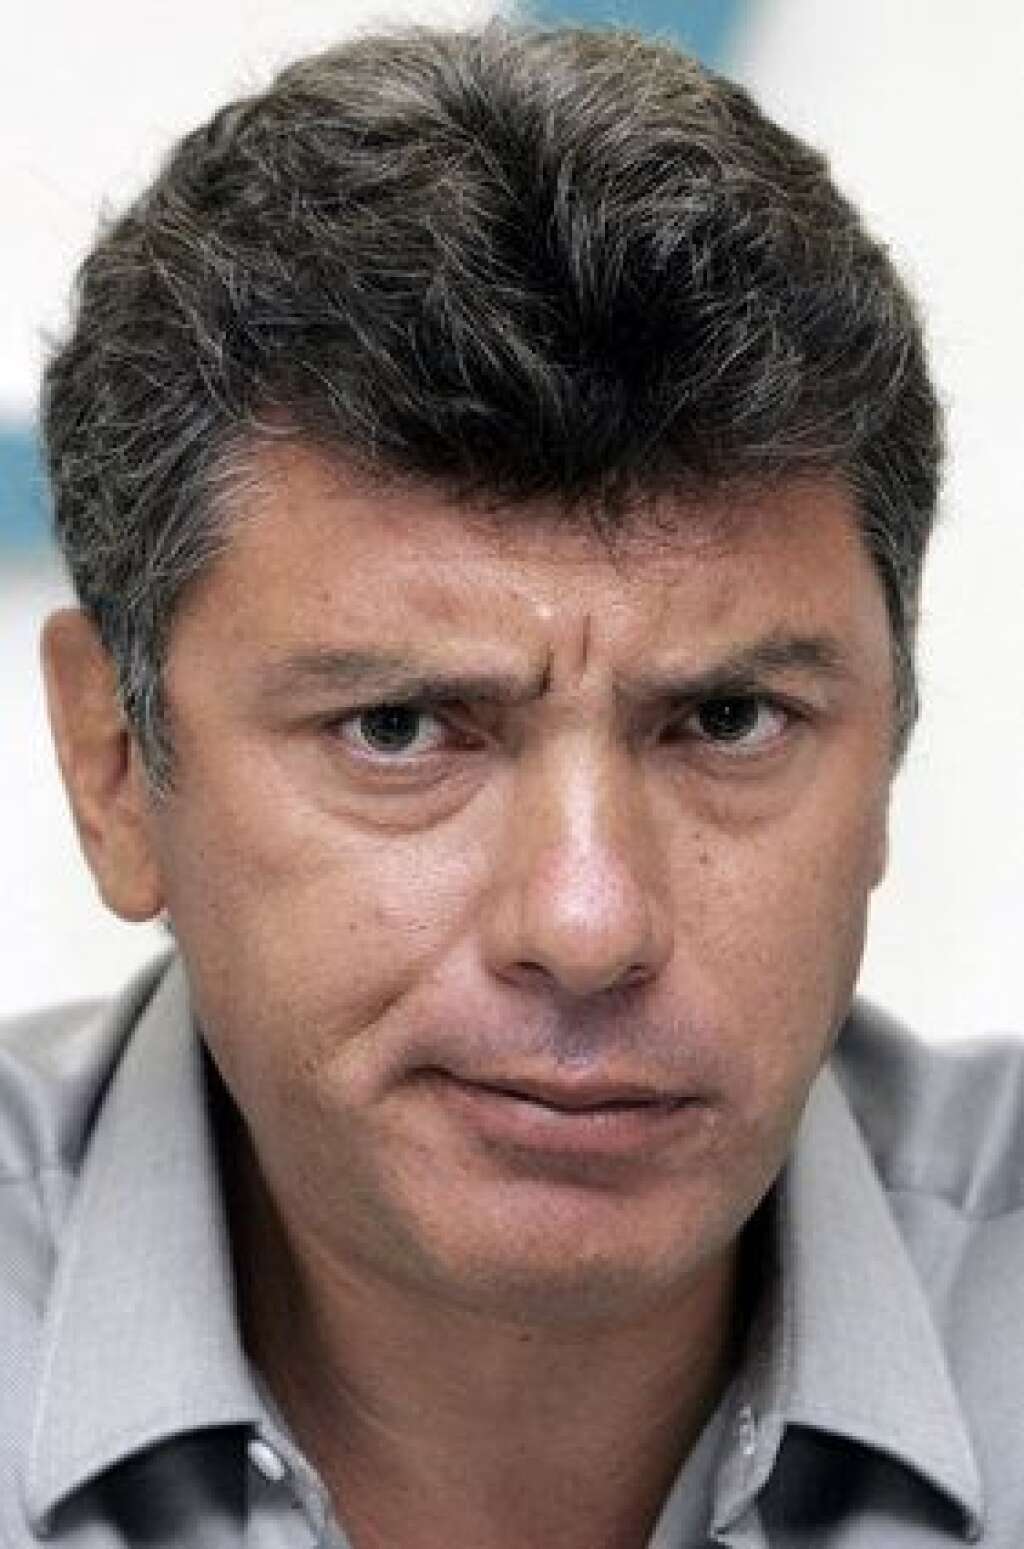 27 février 2015 - Boris Nemtsov - L'opposant et ancien vice-Premier ministre Boris Nemtsov, 55 ans, est tué par balles vers 23h15 devant les murs du Kremlin, en plein centre de Moscou.